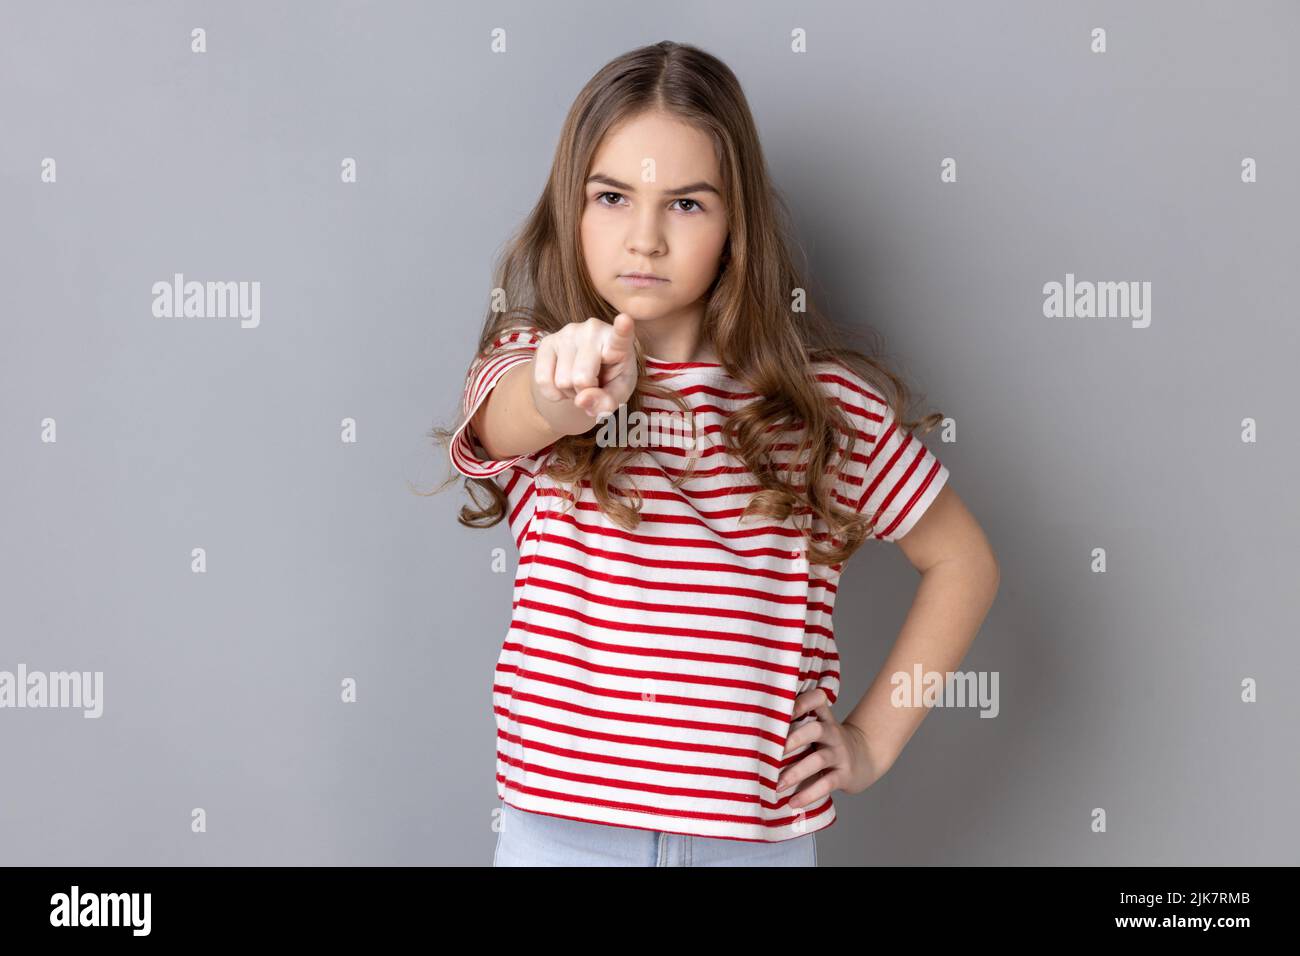 Porträt eines streng dunkelhaarigen kleinen Mädchens in gestreiftem T-Shirt, das den Finger auf die Kamera zeigt und sich mit einem schweren, herrischen Gesicht beschuldigt. Innenaufnahme des Studios isoliert auf grauem Hintergrund. Stockfoto